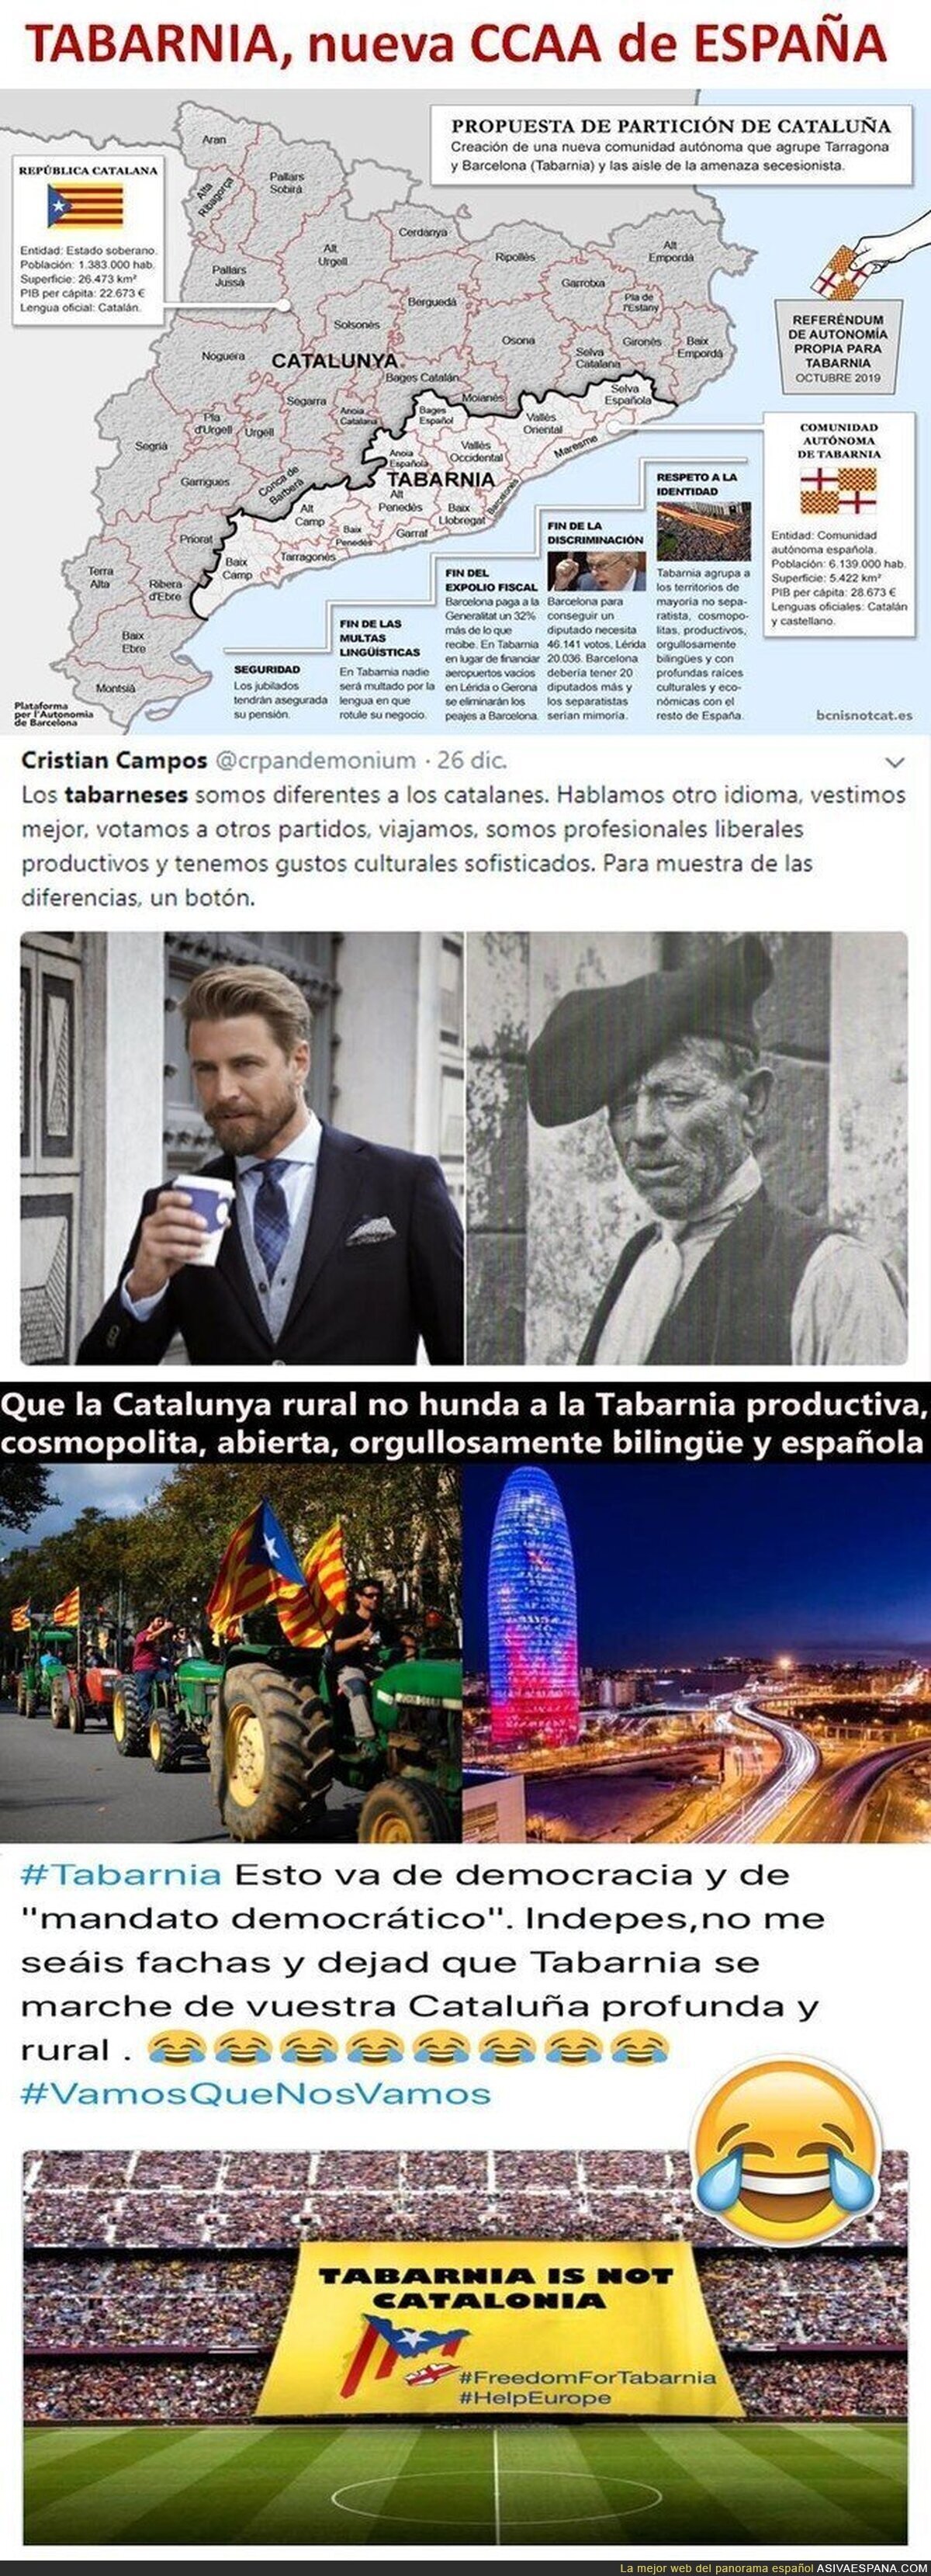 Tabarnia is not Catalonia